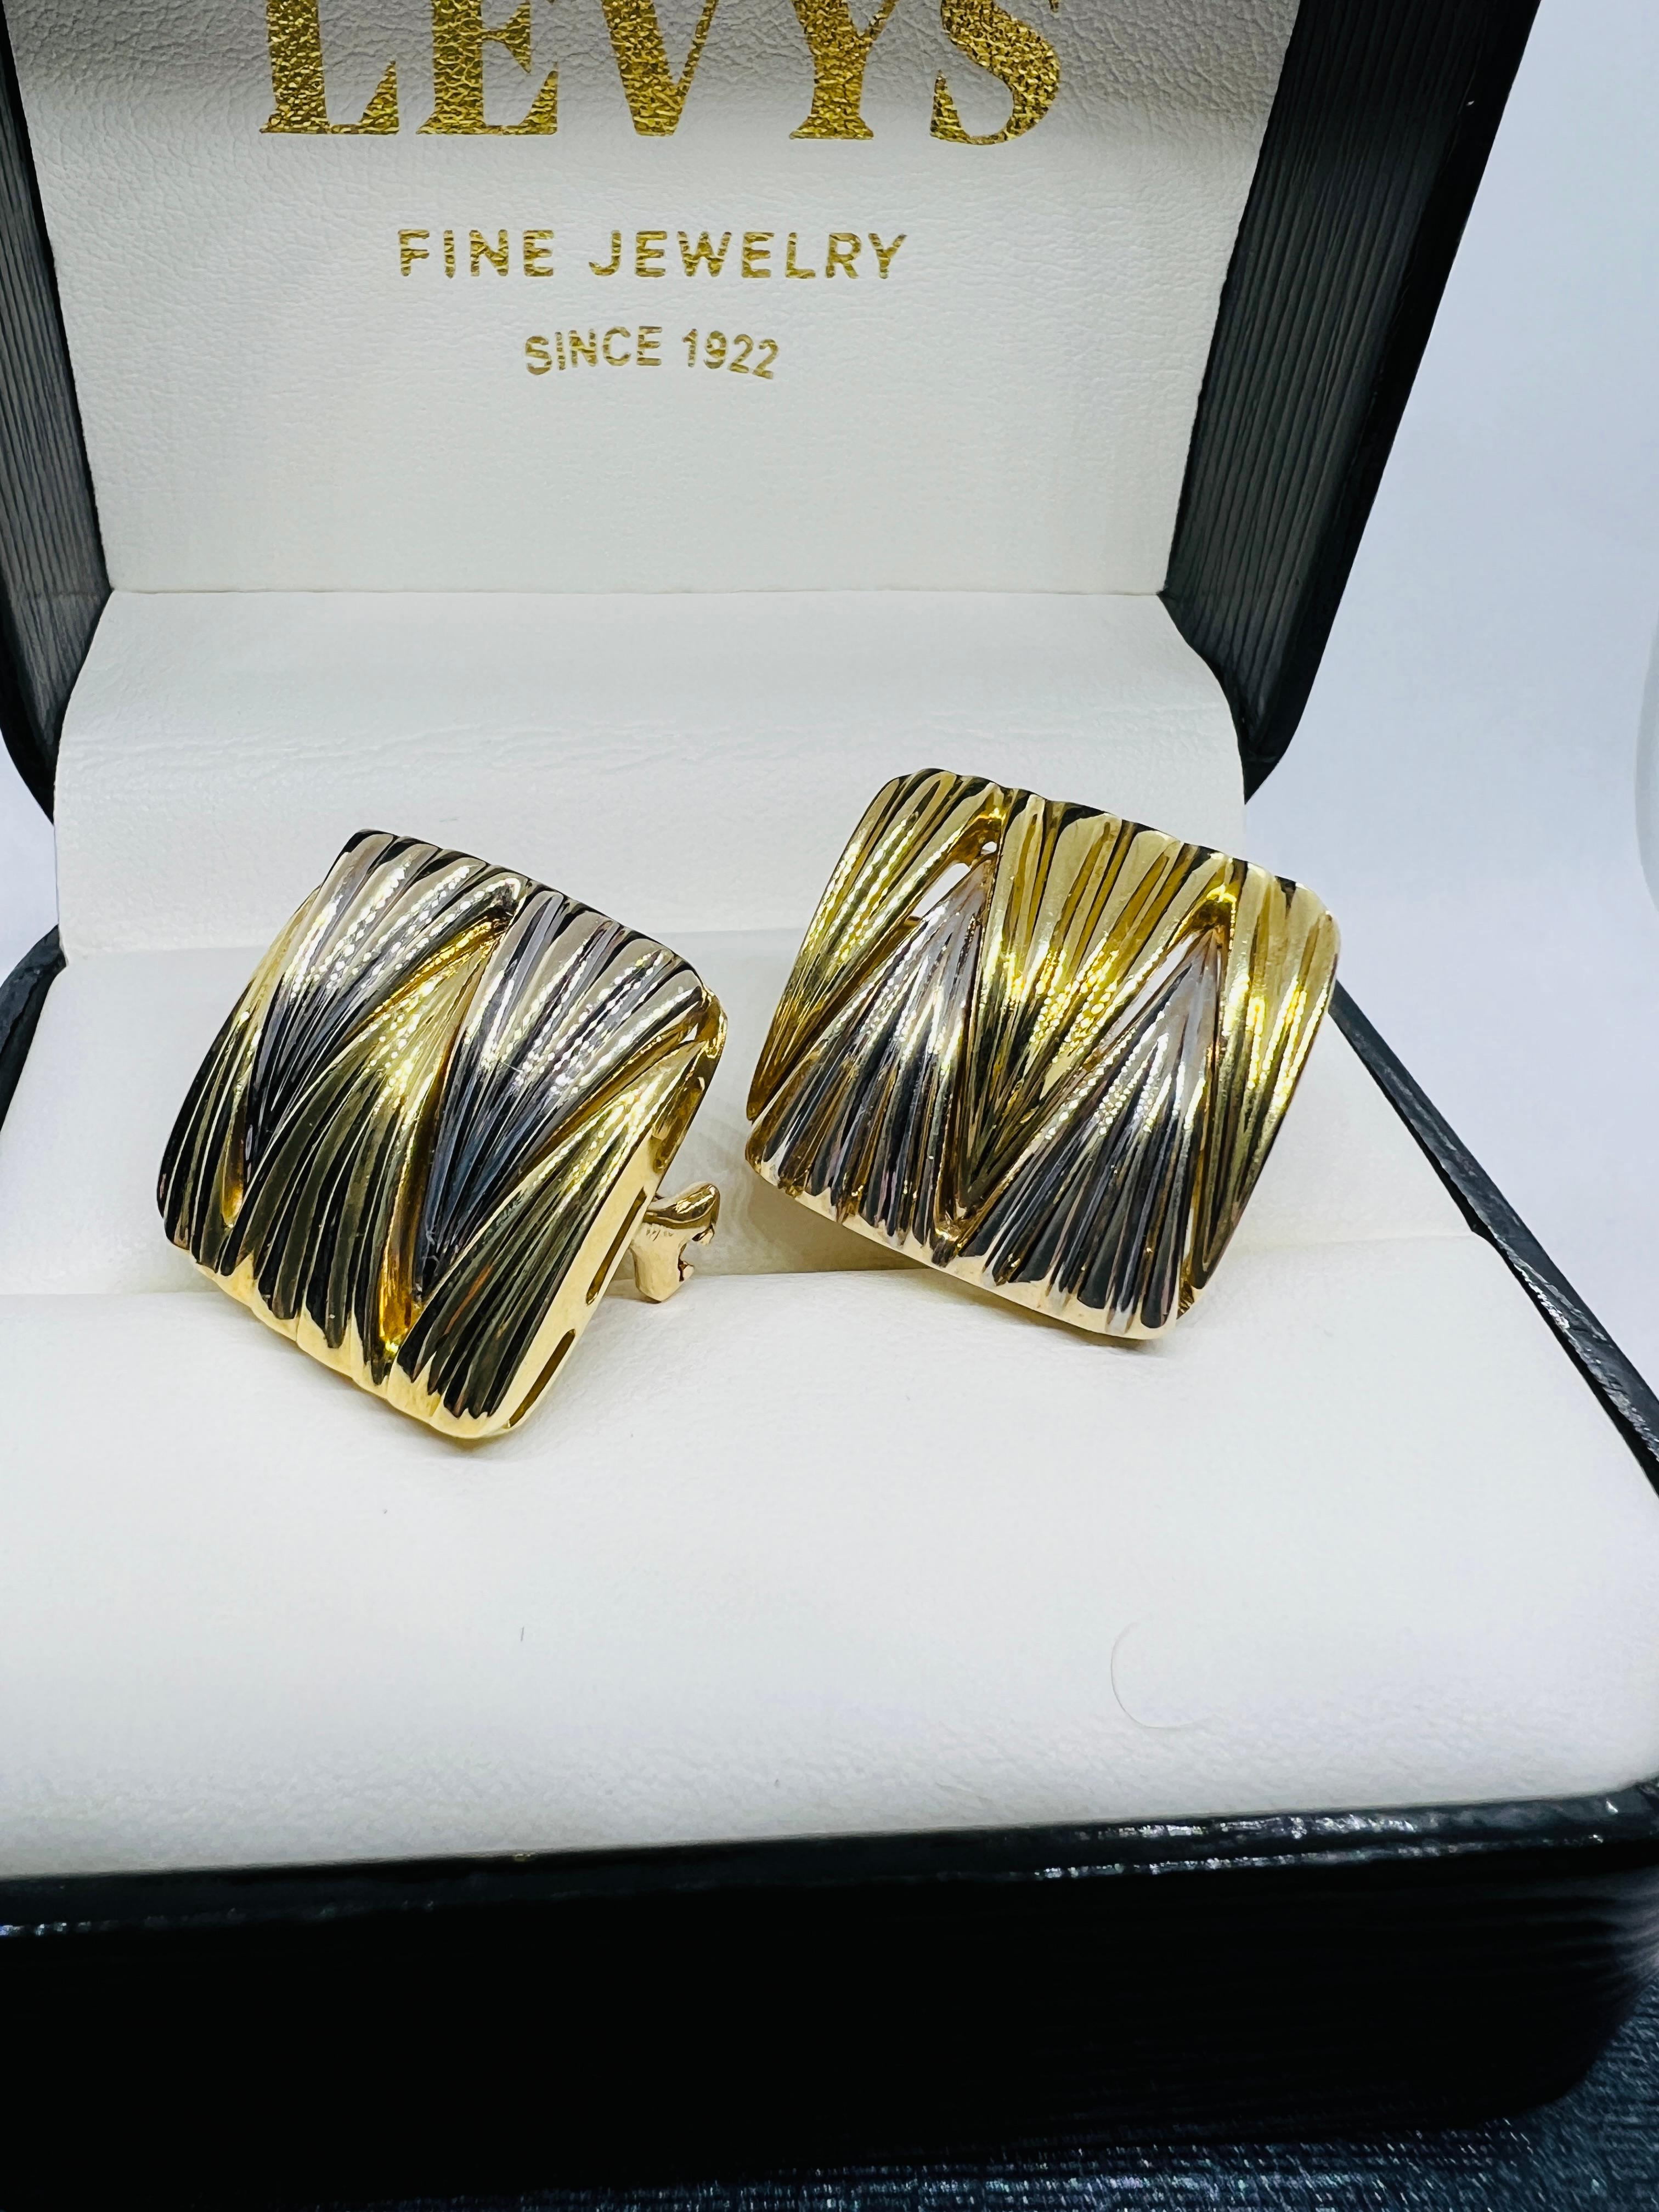 Les boucles d'oreilles carrées Michael Bondanza sont absolument magnifiques ! Ils mesurent trois quarts de pouce carré et pèsent 19,5 grammes. Il s'agit d'or jaune 18 carats et de platine qui sont entrelacés dans un motif en zig-zag fantaisiste.